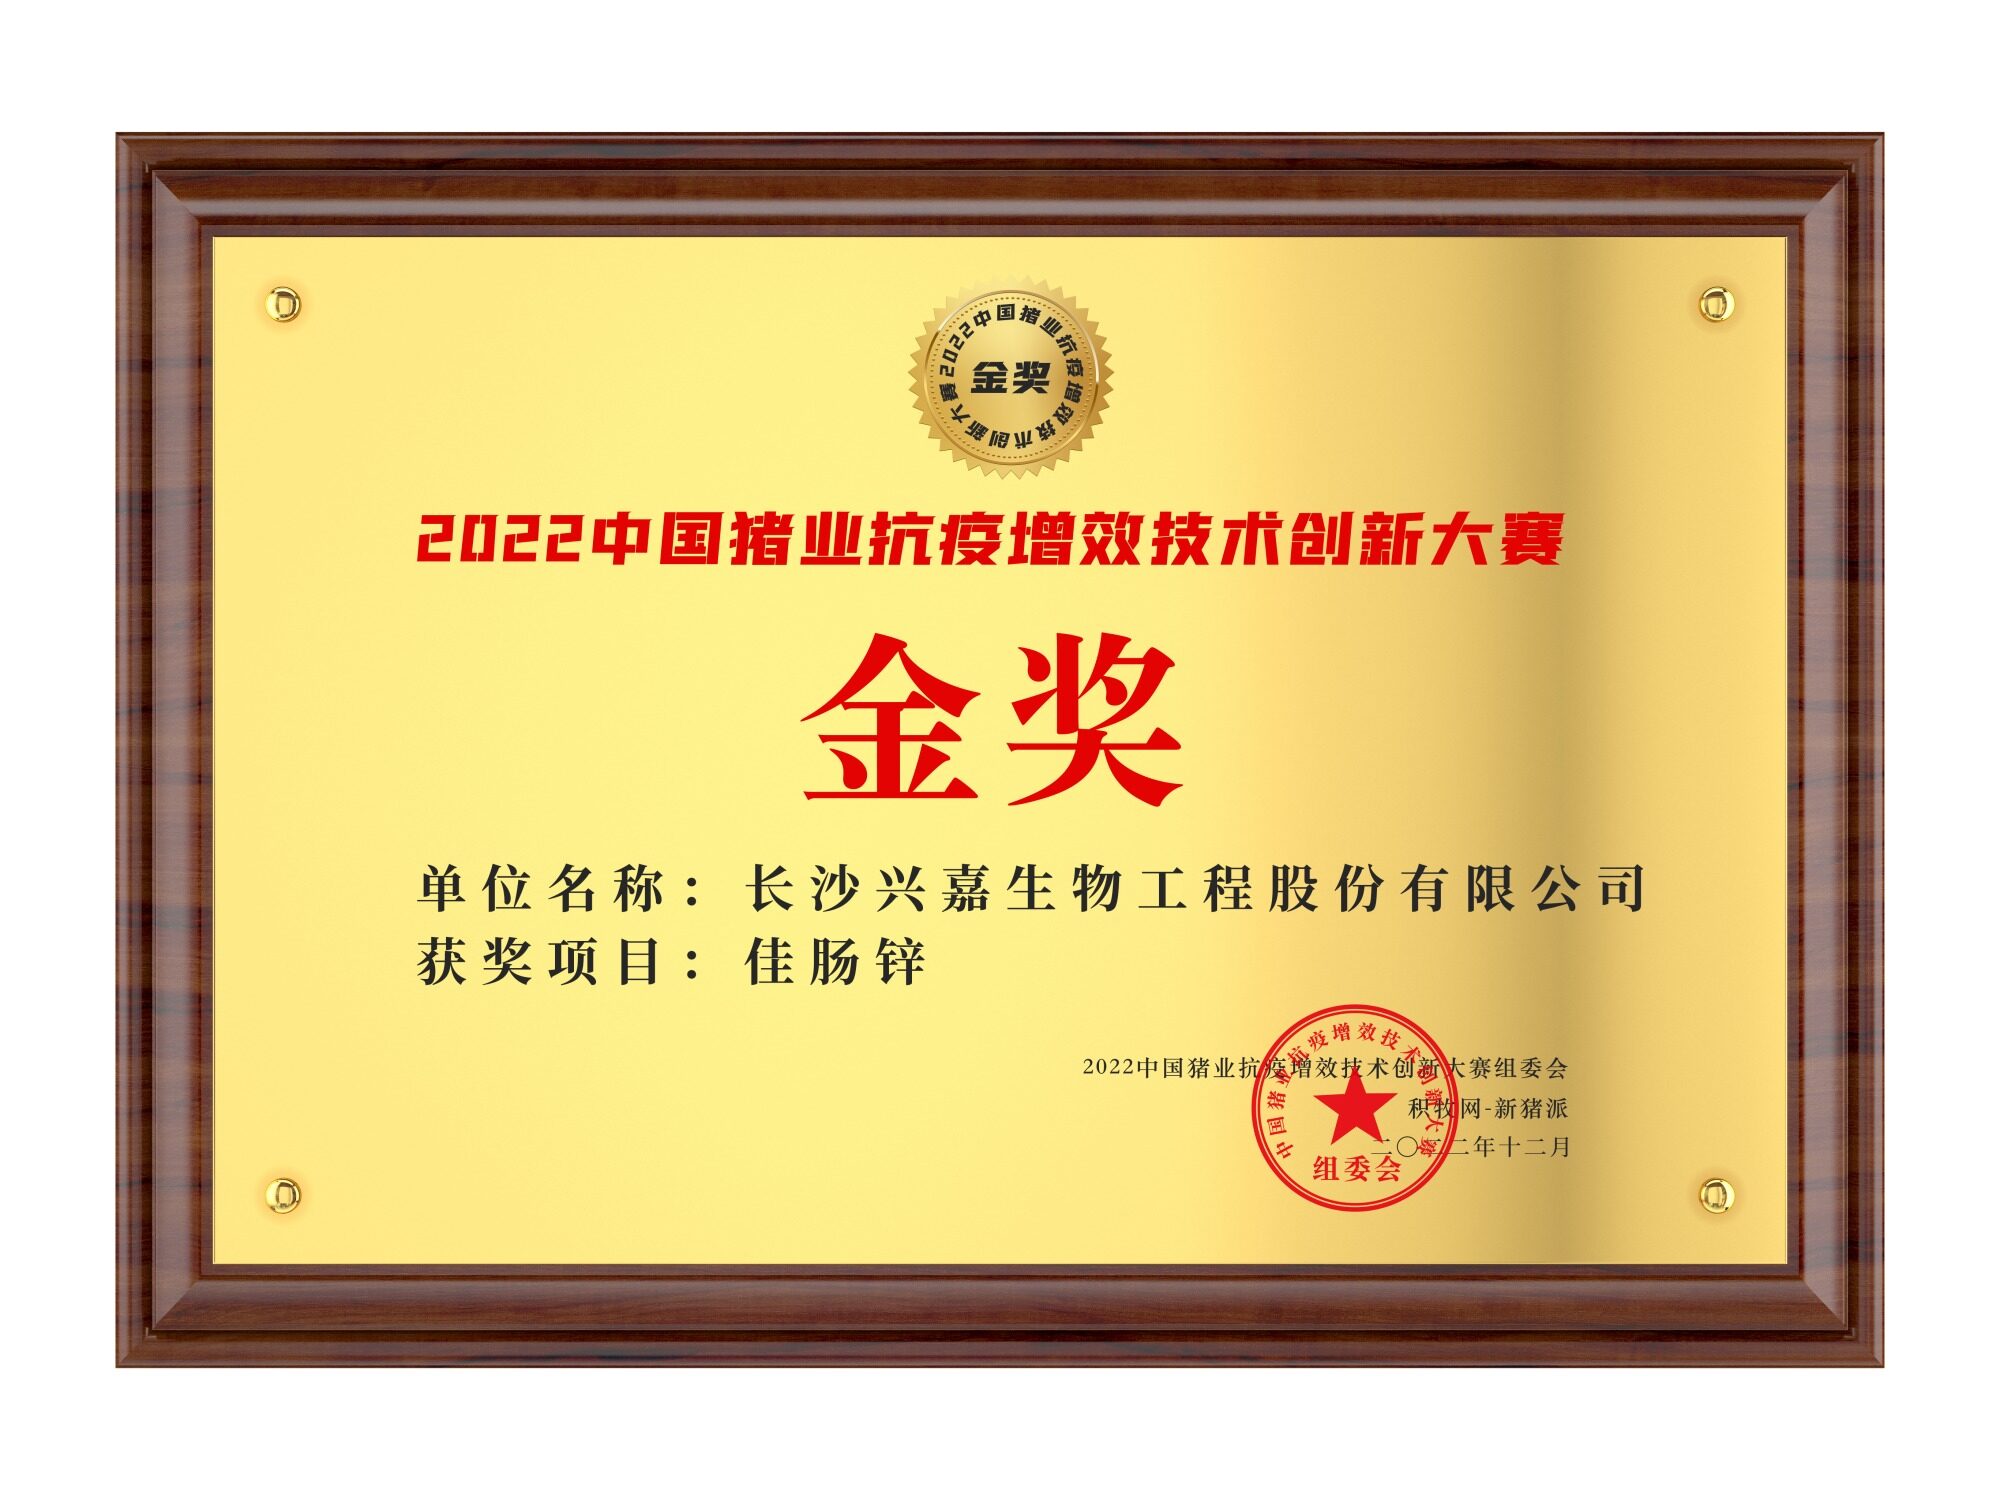 兴嘉生物【佳肠锌】荣获2022中国猪业抗疫增效技术创新大赛(第二季)·金奖